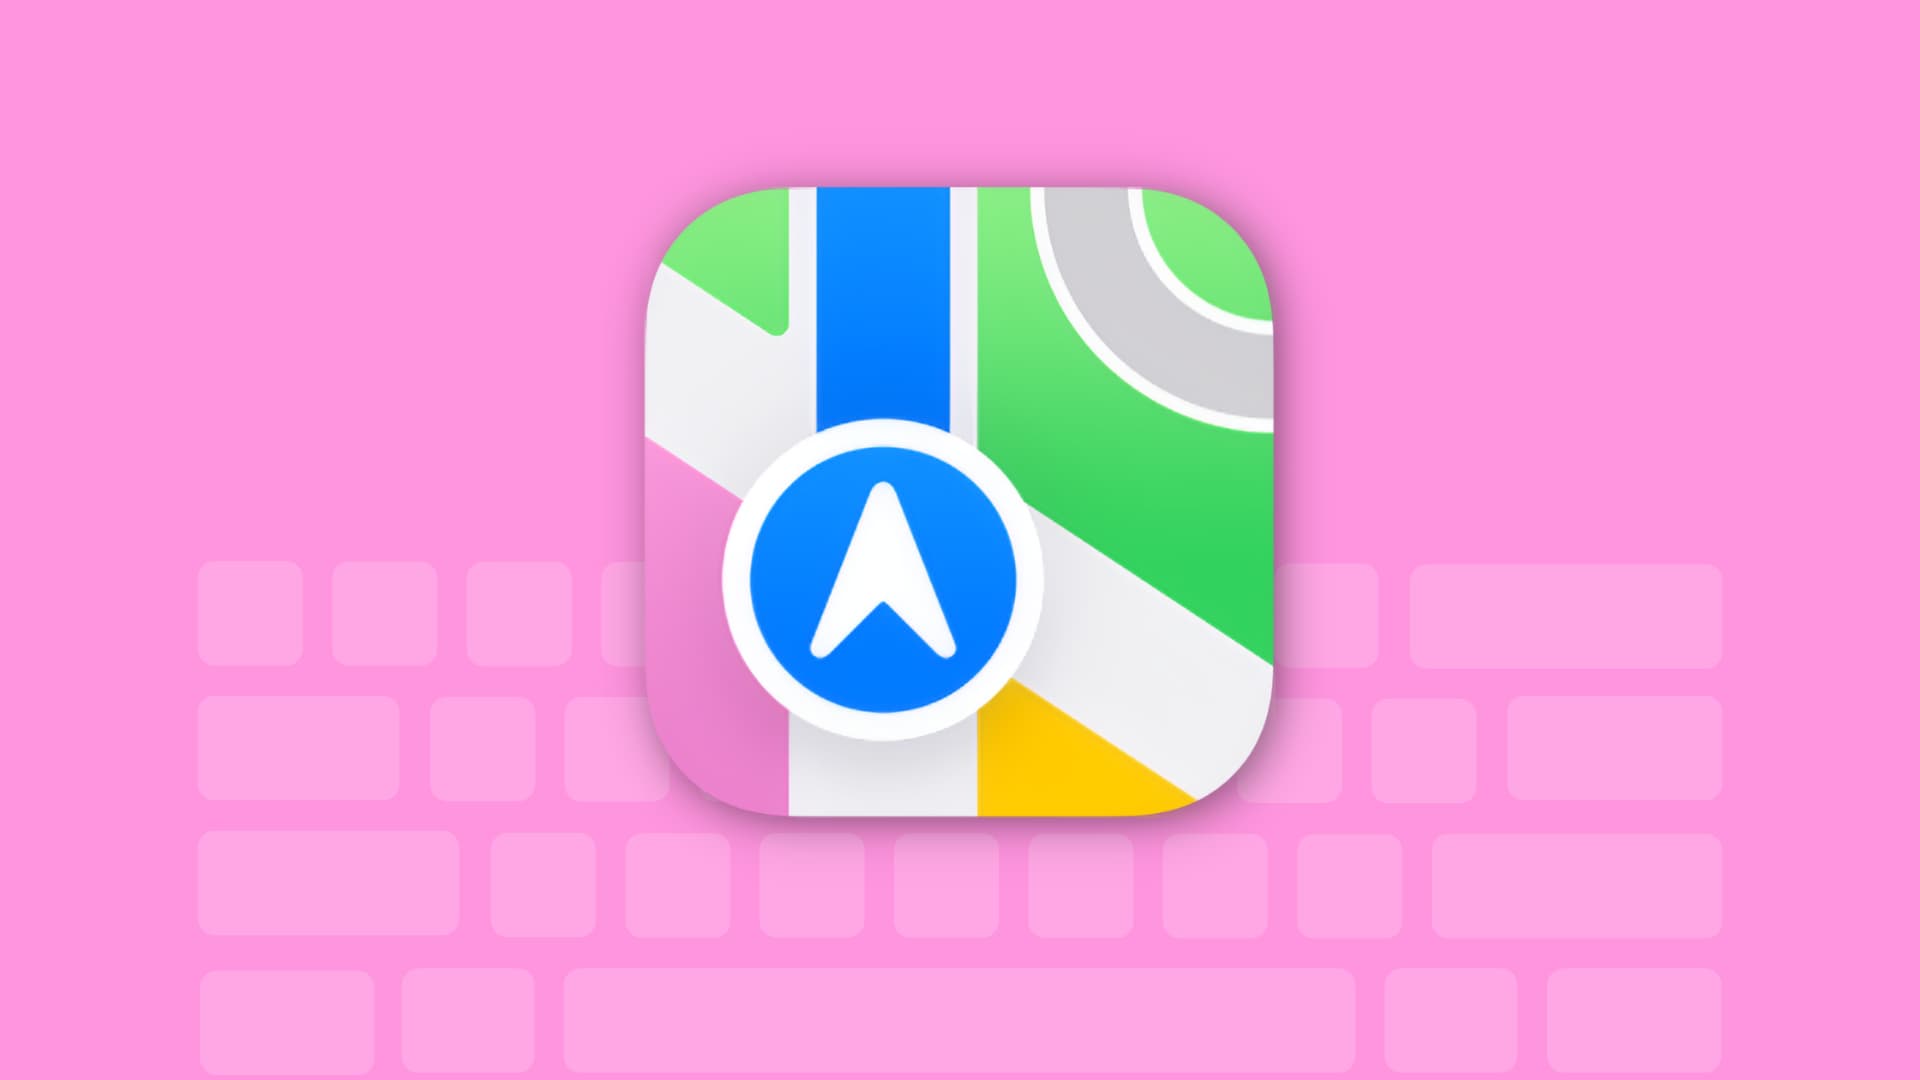 Apple Maps app keyboard shortcuts